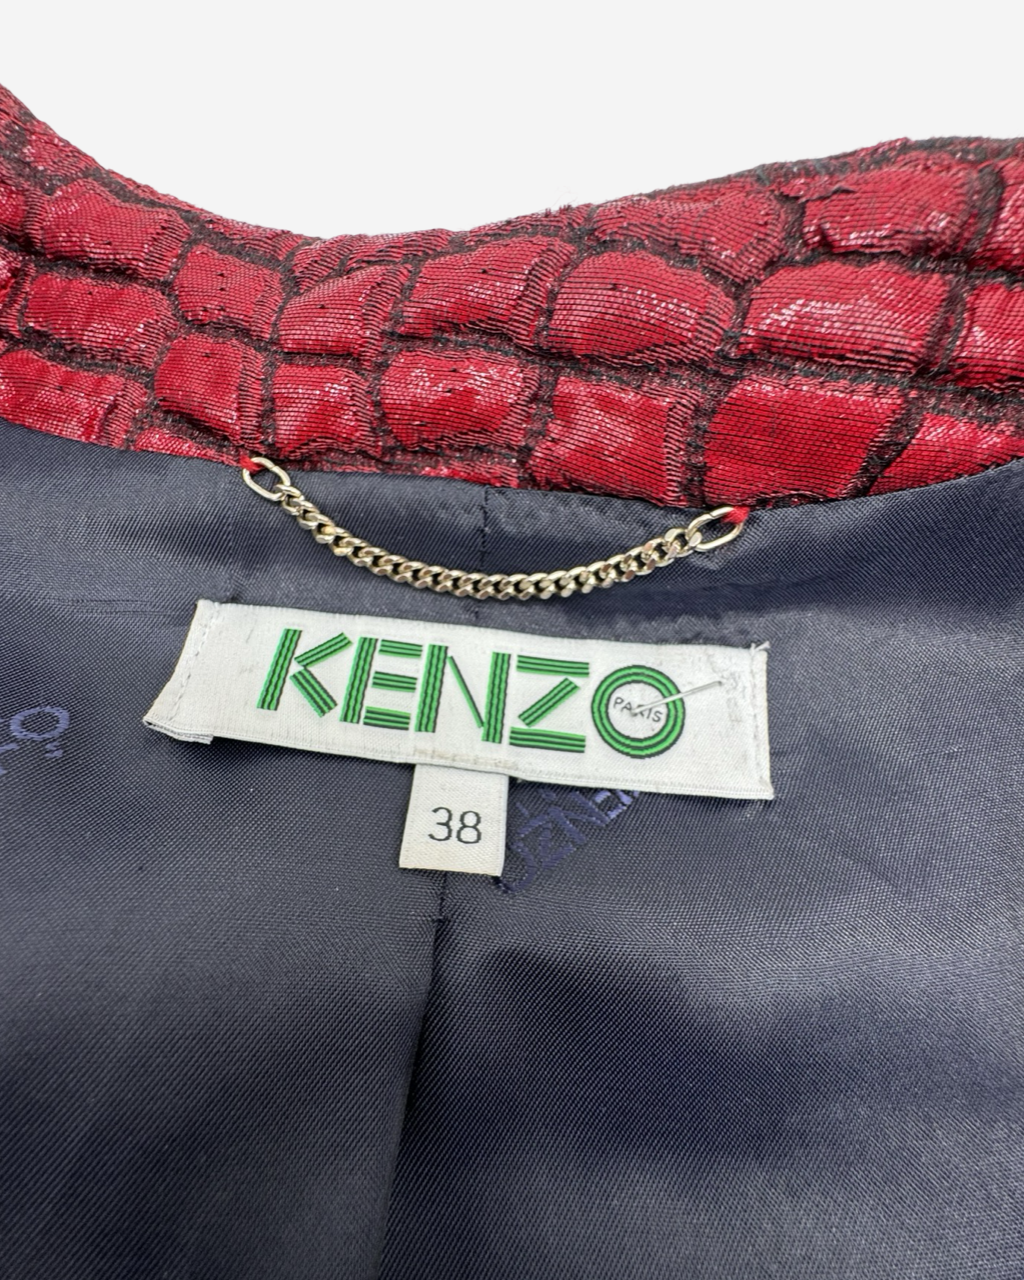 Kenzo coat